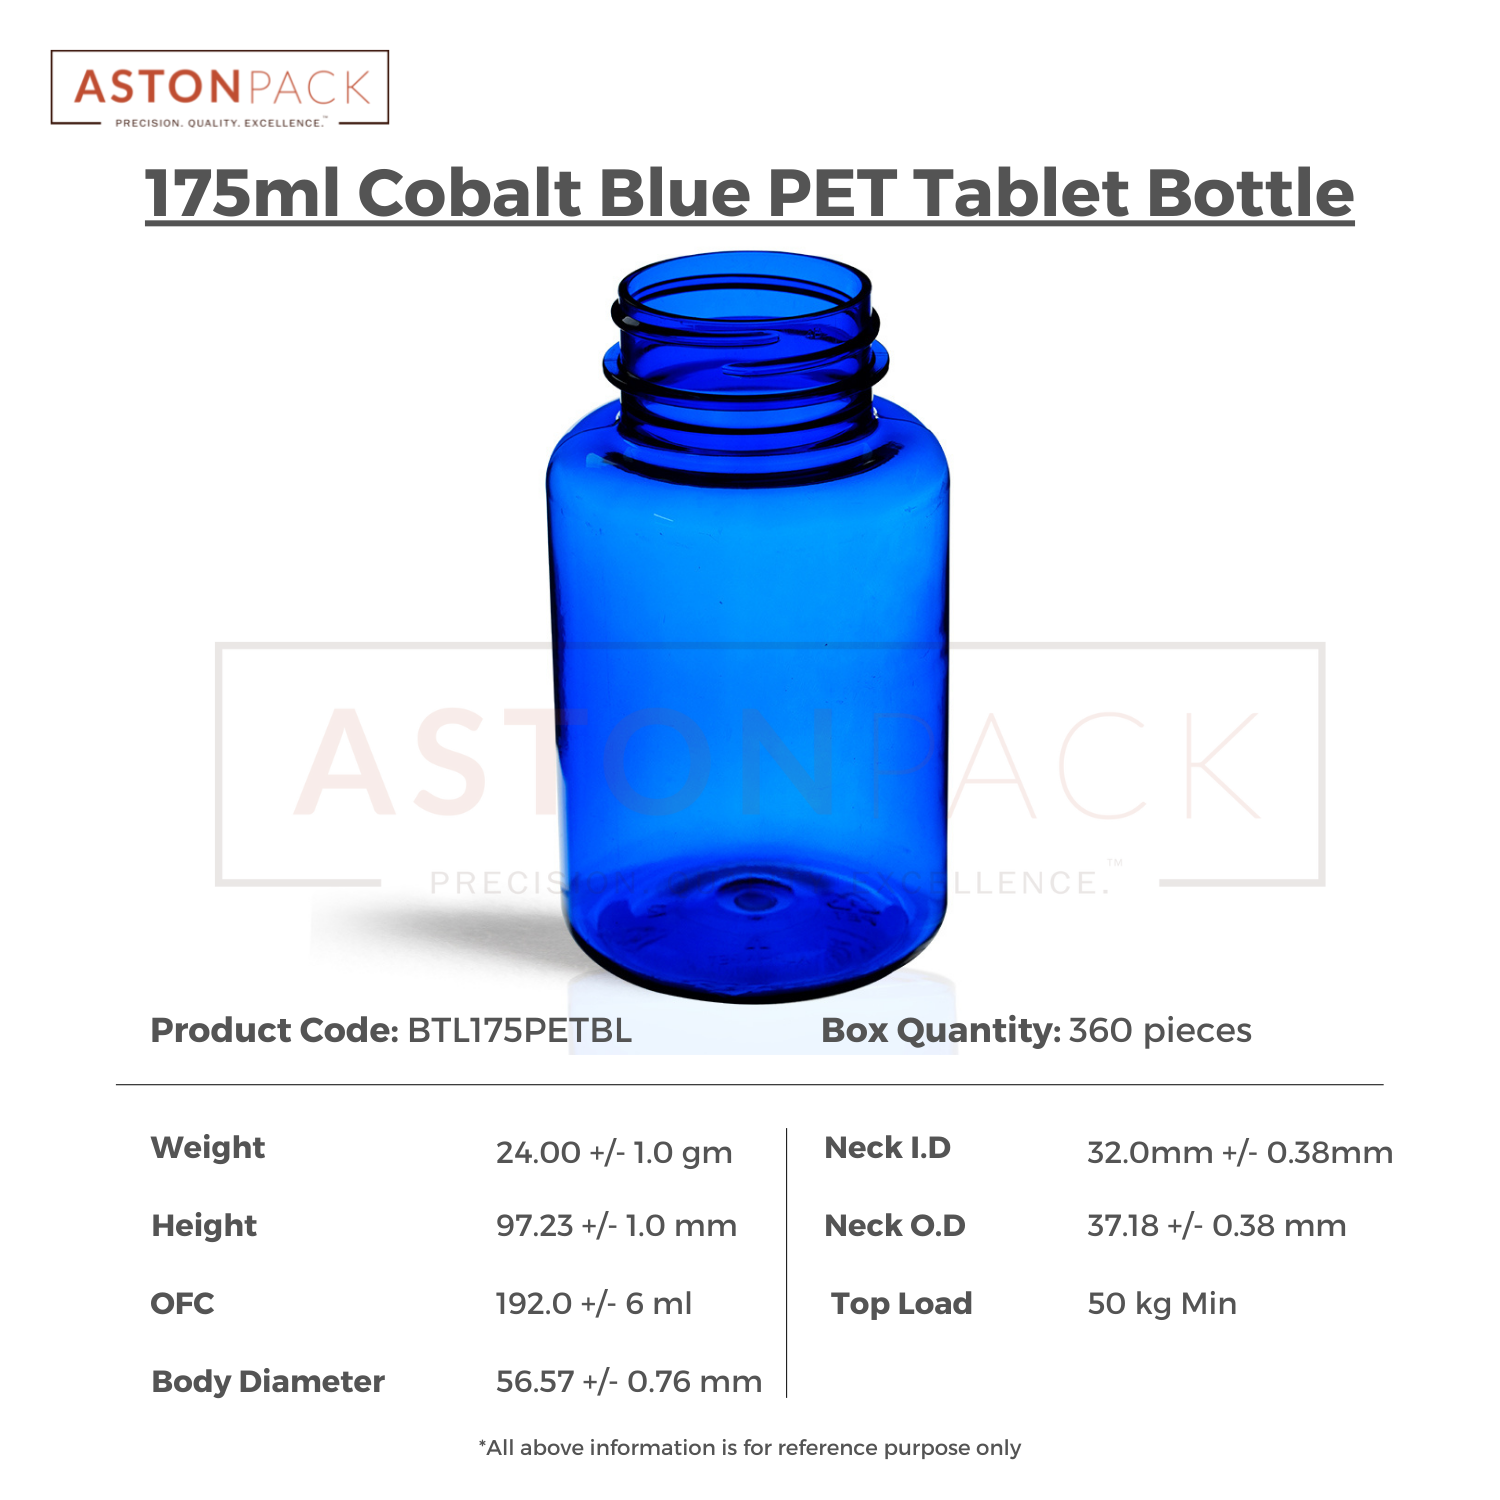 175 ml Cobalt Blue Dietary Supplement PET Packaging Bottles